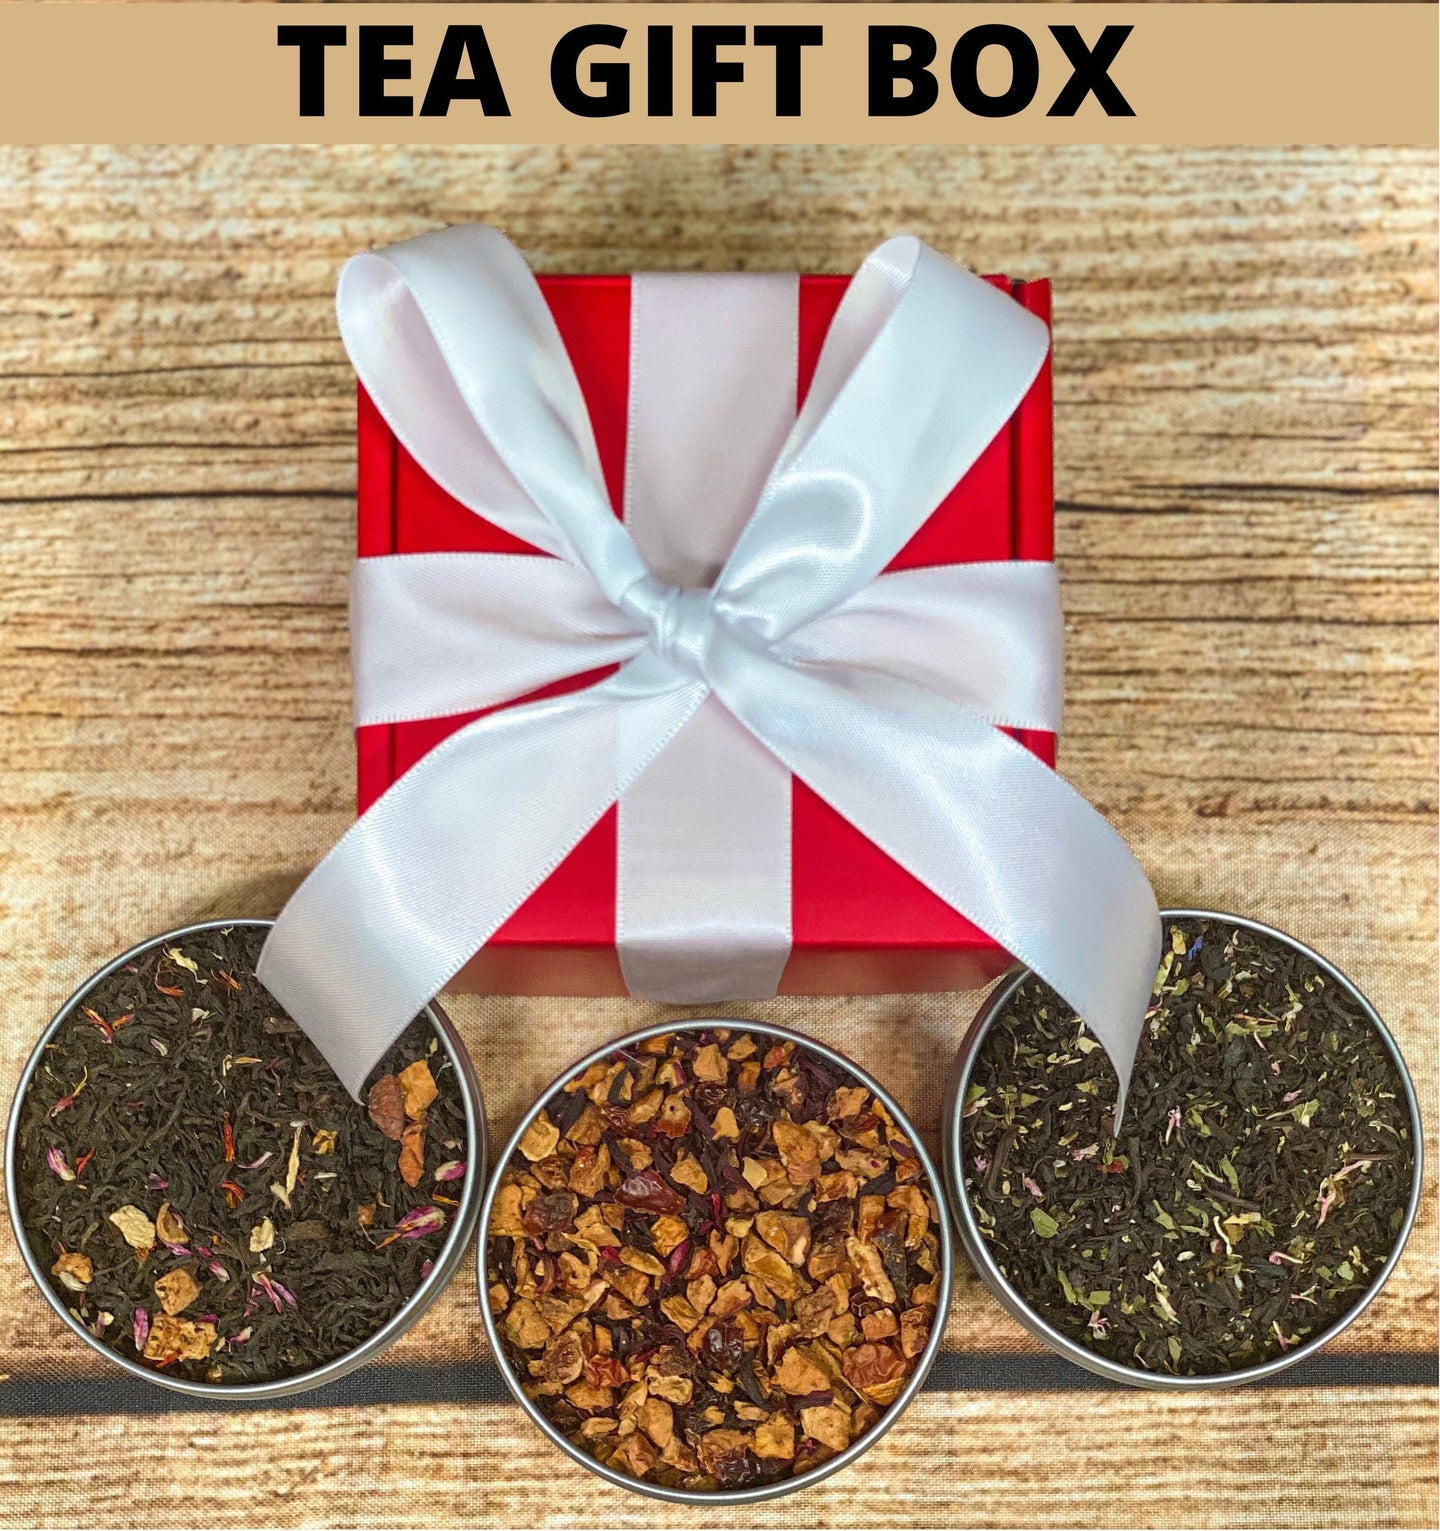 Tea Gift Box, Tea Gift Idea, Birthday Tea Gift Box, Thank You Tea Gifts, Organic Tea Gift Box, Tea Gift Set